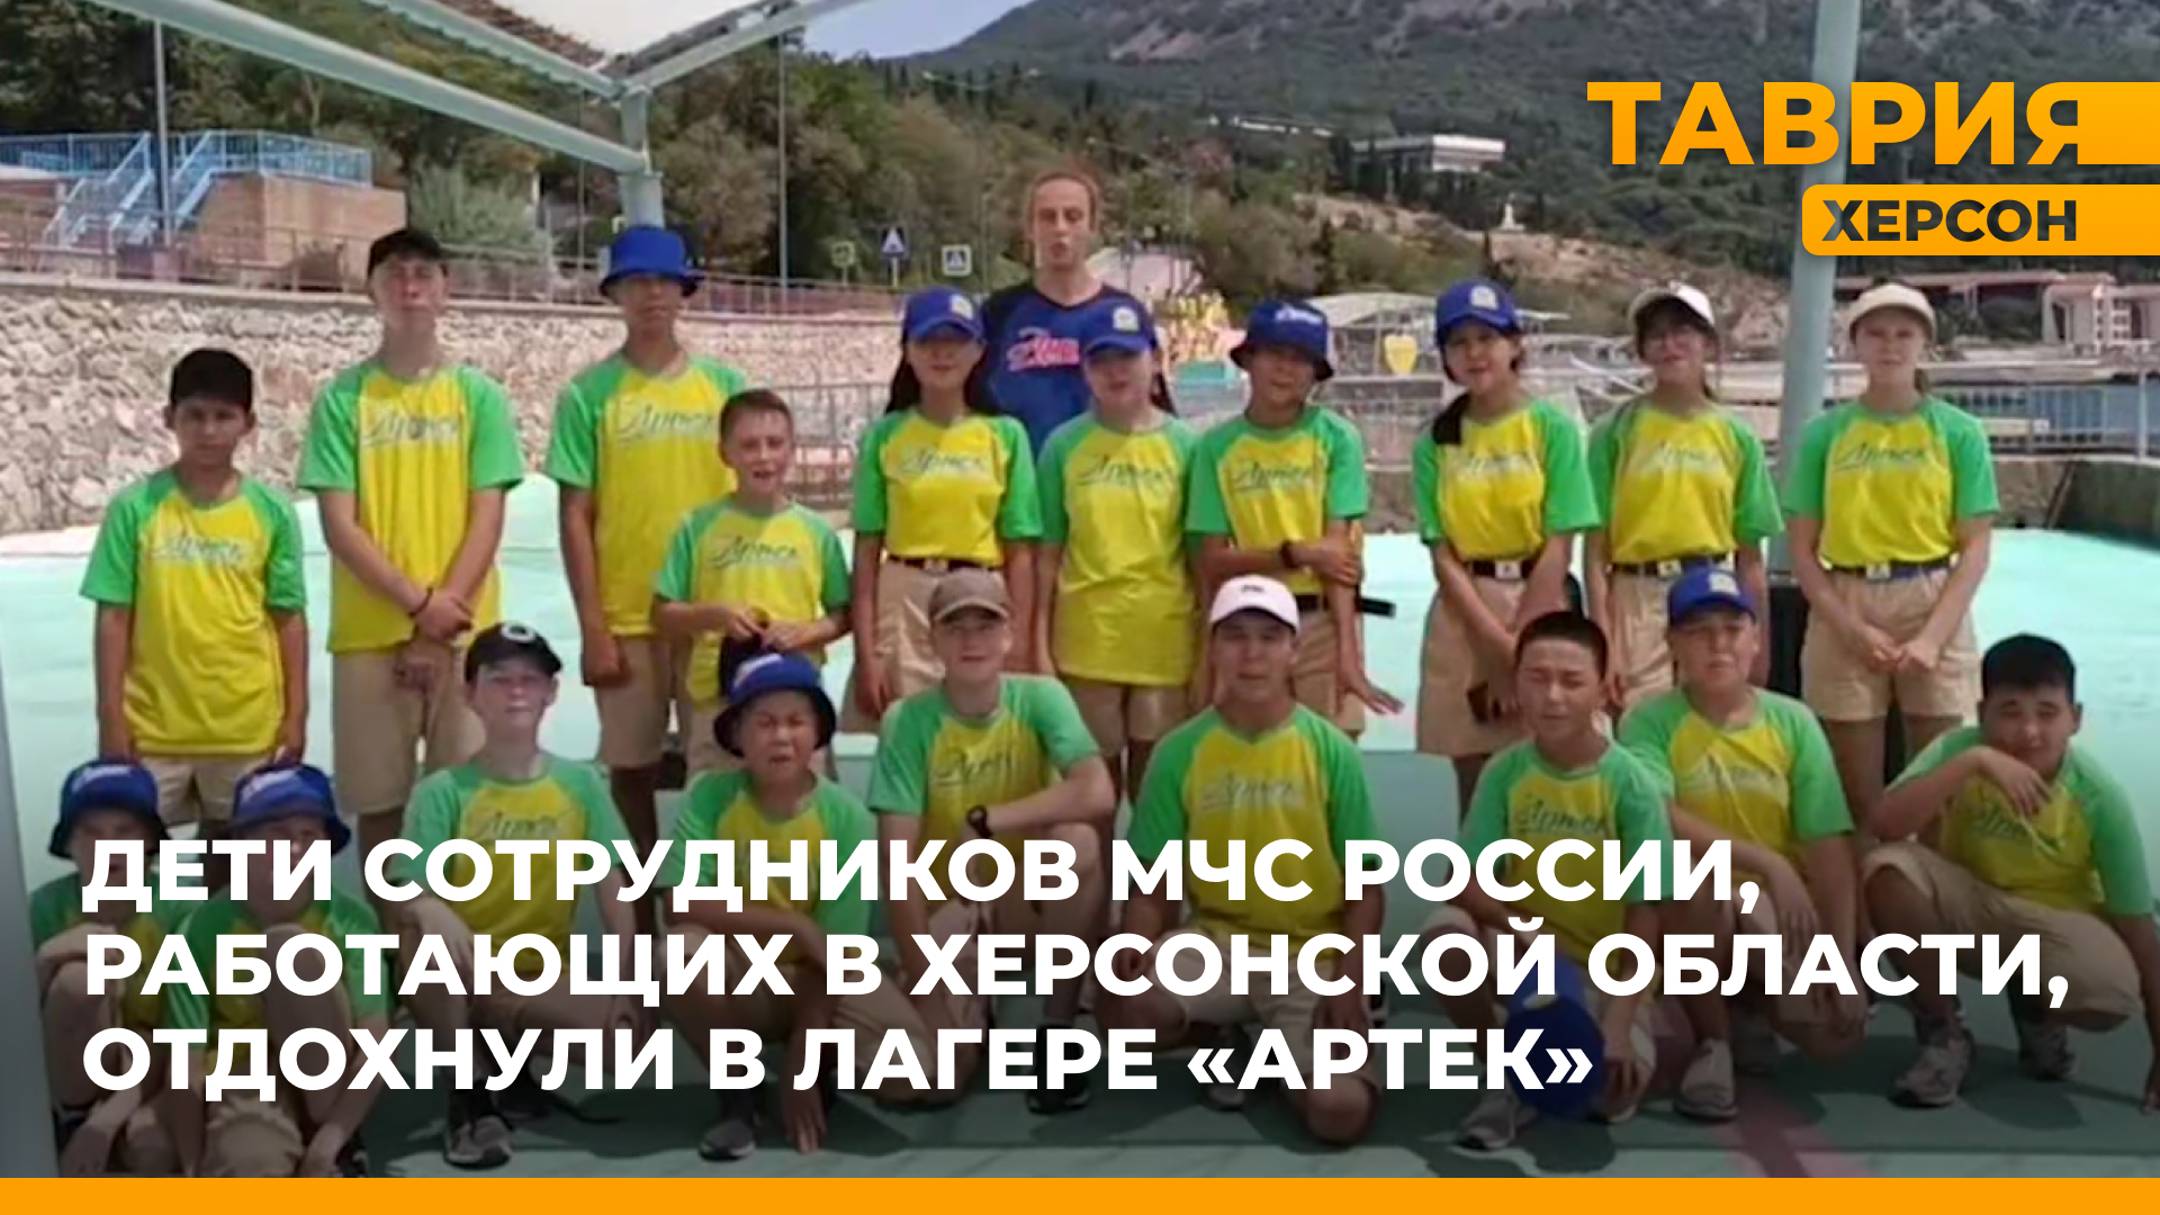 В "Артеке" отдохнули 25 детей сотрудников МЧС России по Херсонской области